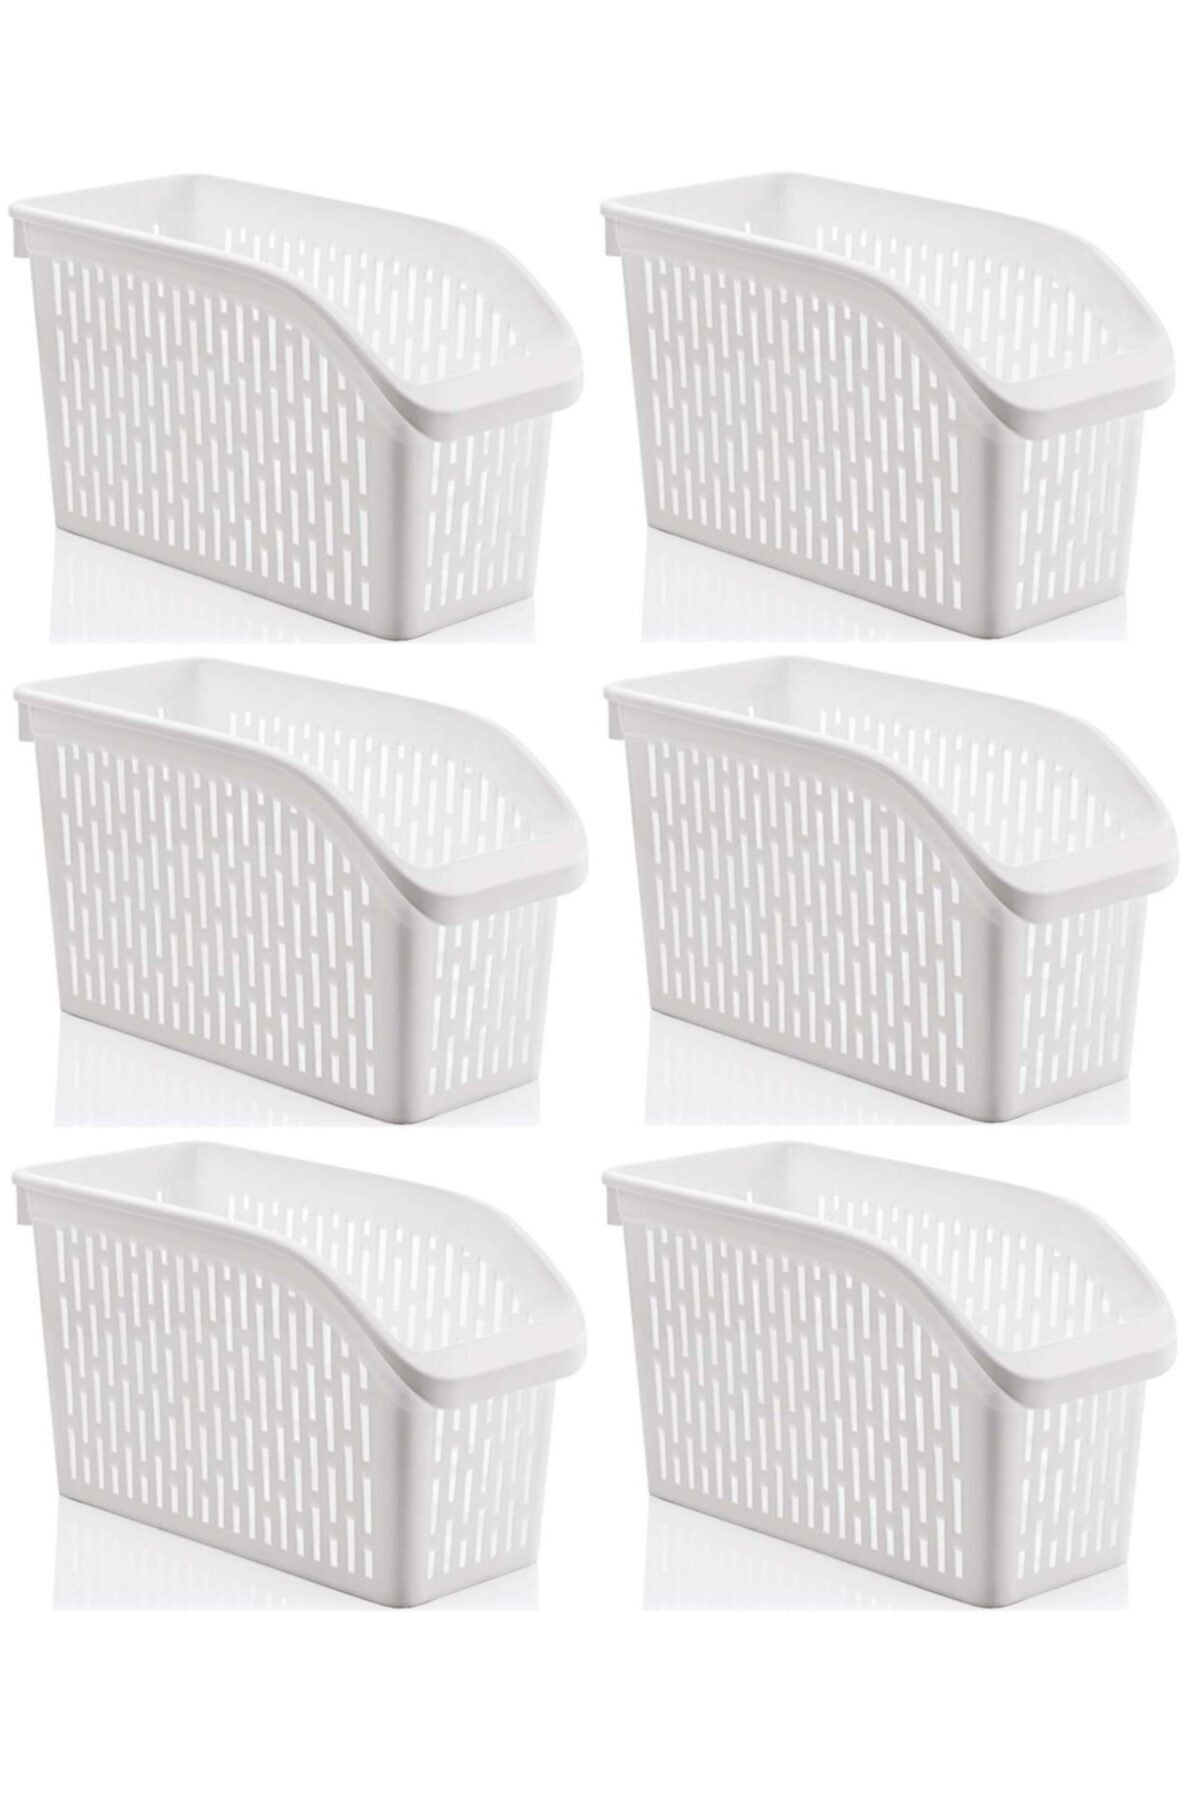 Sas Haus Buzdolabı Sepeti Dolap Içi Düzenleyici Sepet Organizer Beyaz 6 Adet 30x17x16 No:2